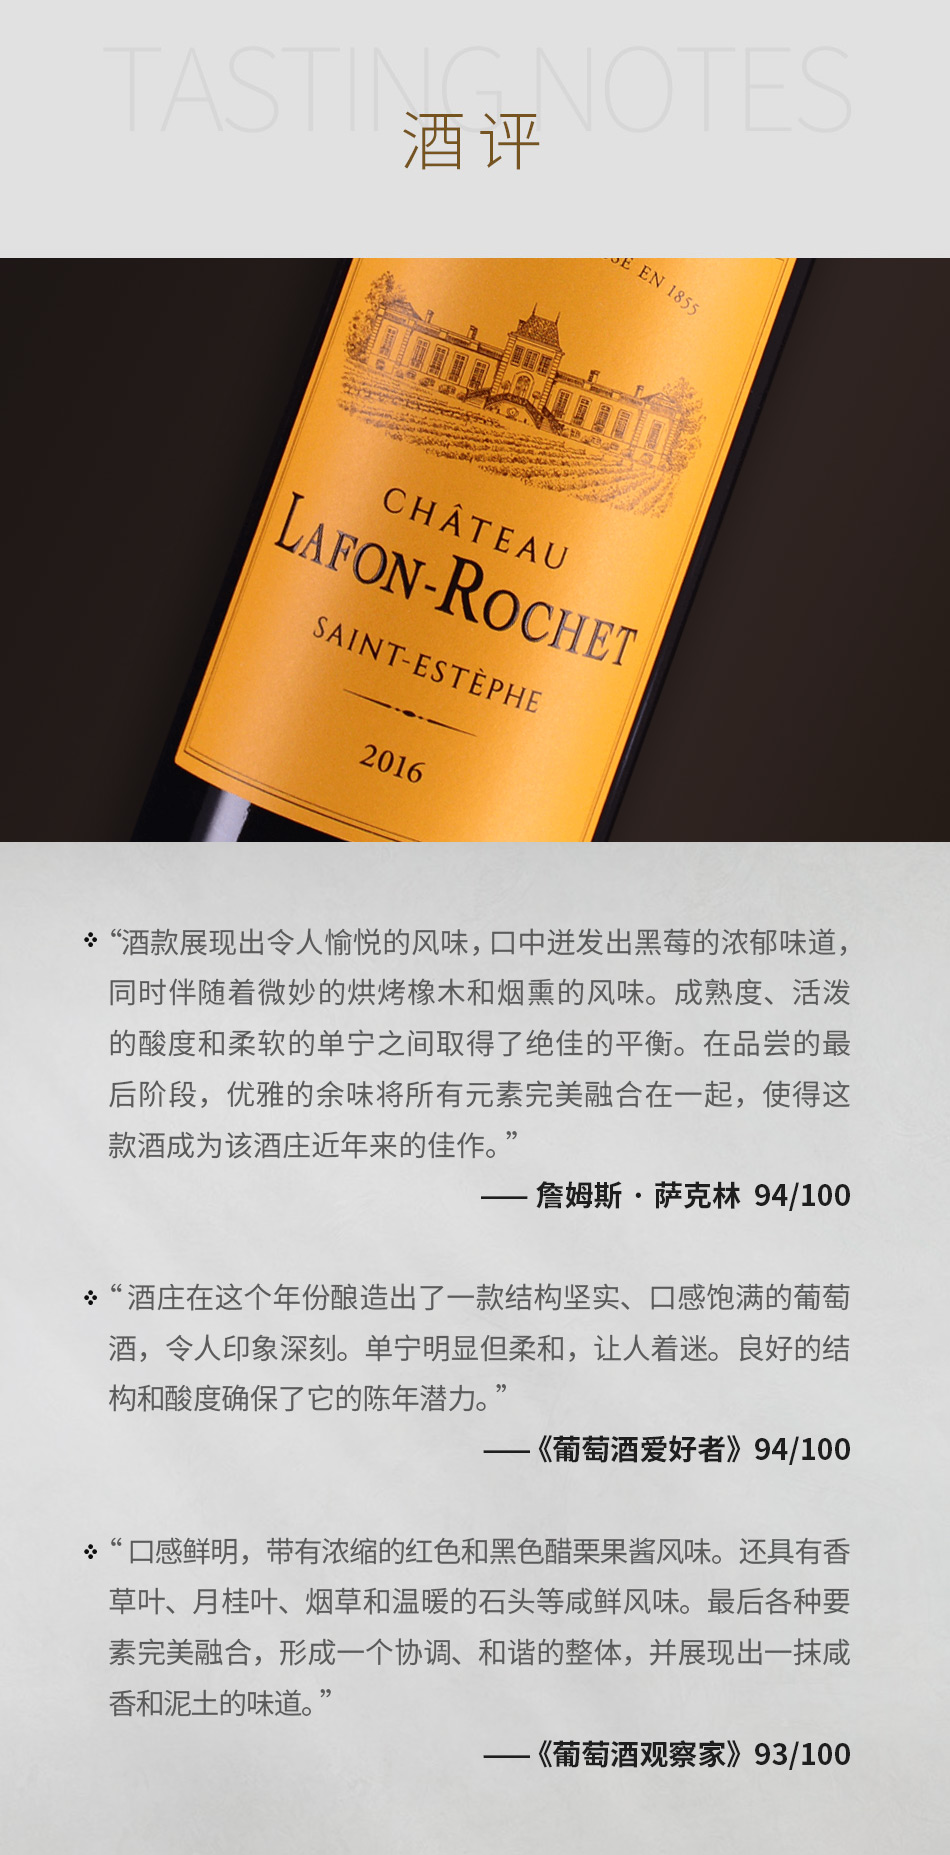 2016年拉枫罗榭酒庄红葡萄酒